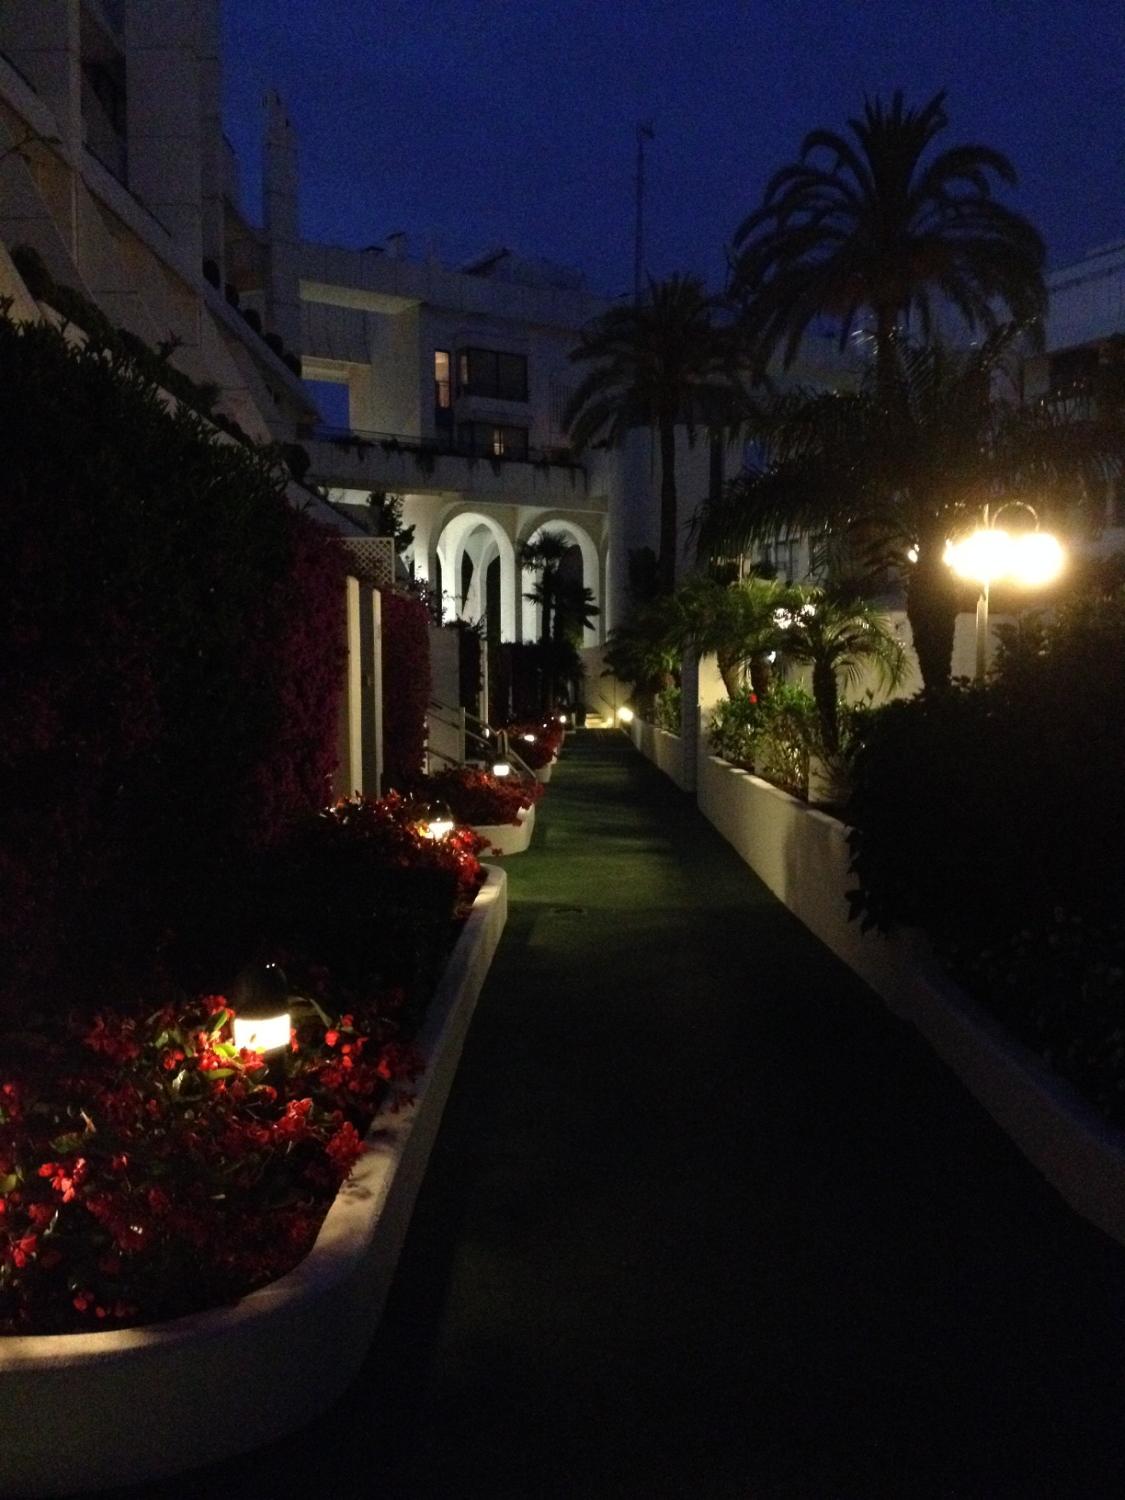 Hyra. Duplex med 2 sovrum. 1 minuts promenad från stranden. Marbella.